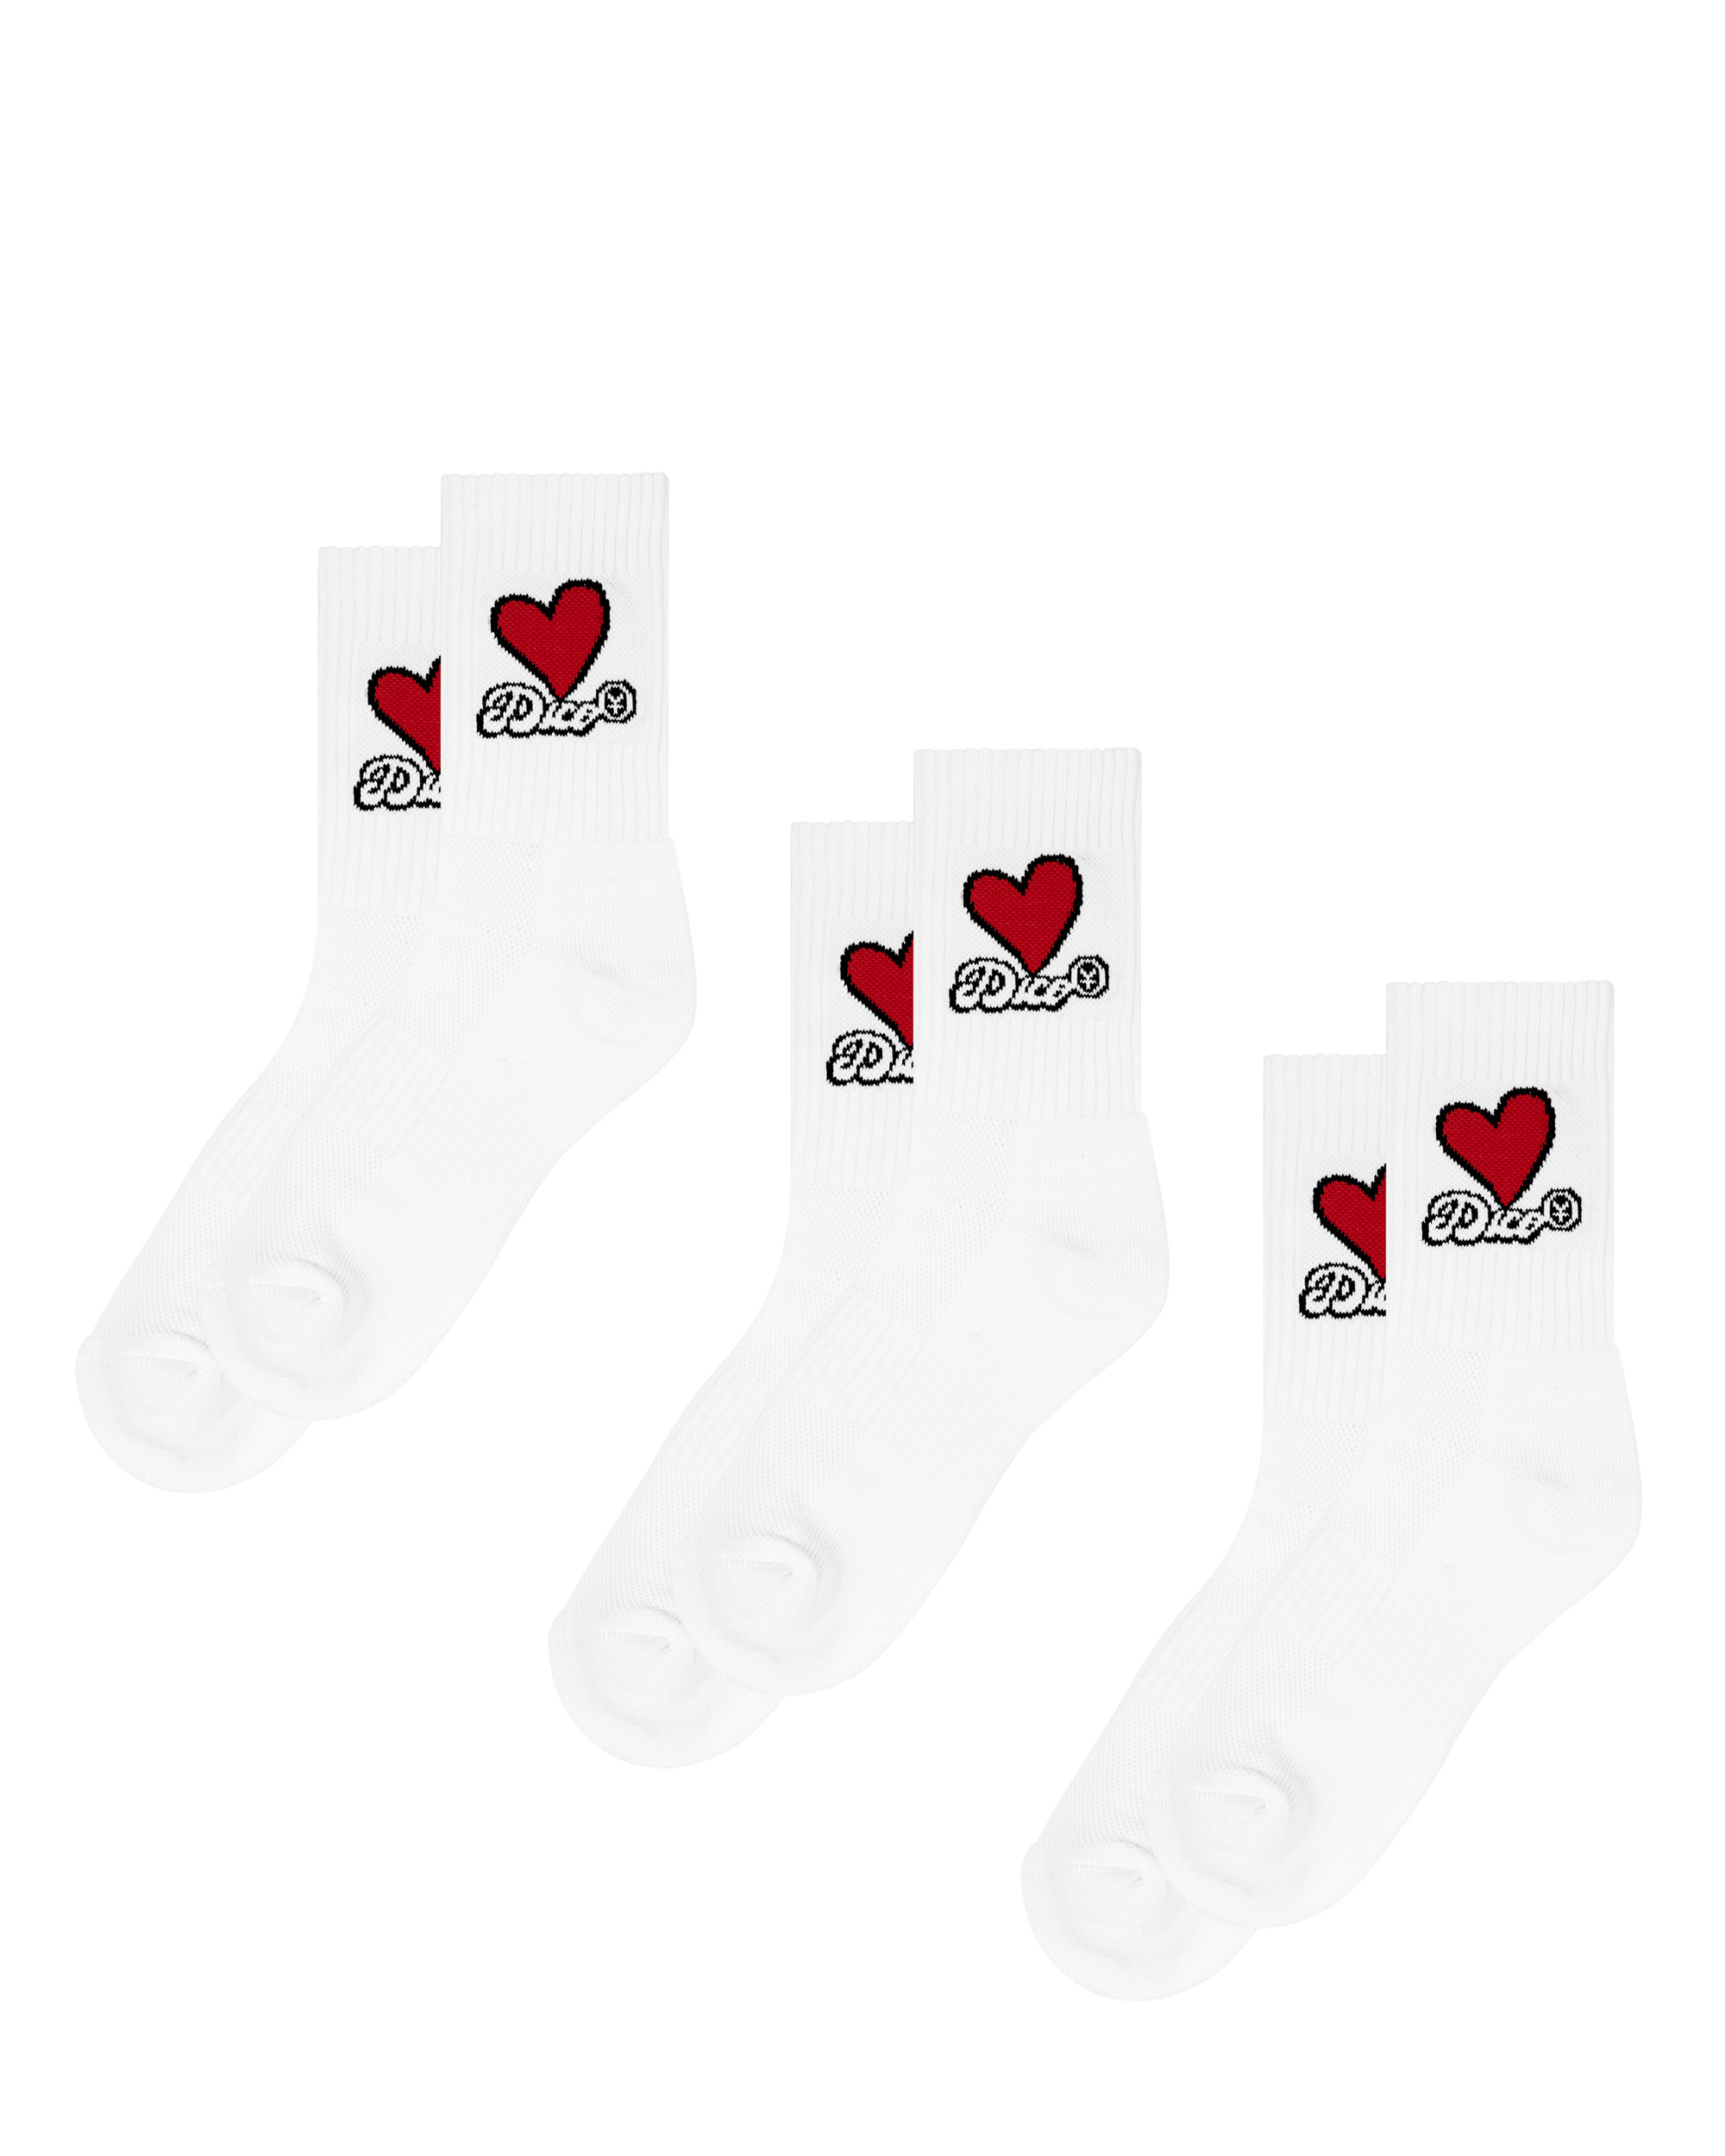 Dico Love Socks - Red/White - Pack of 3